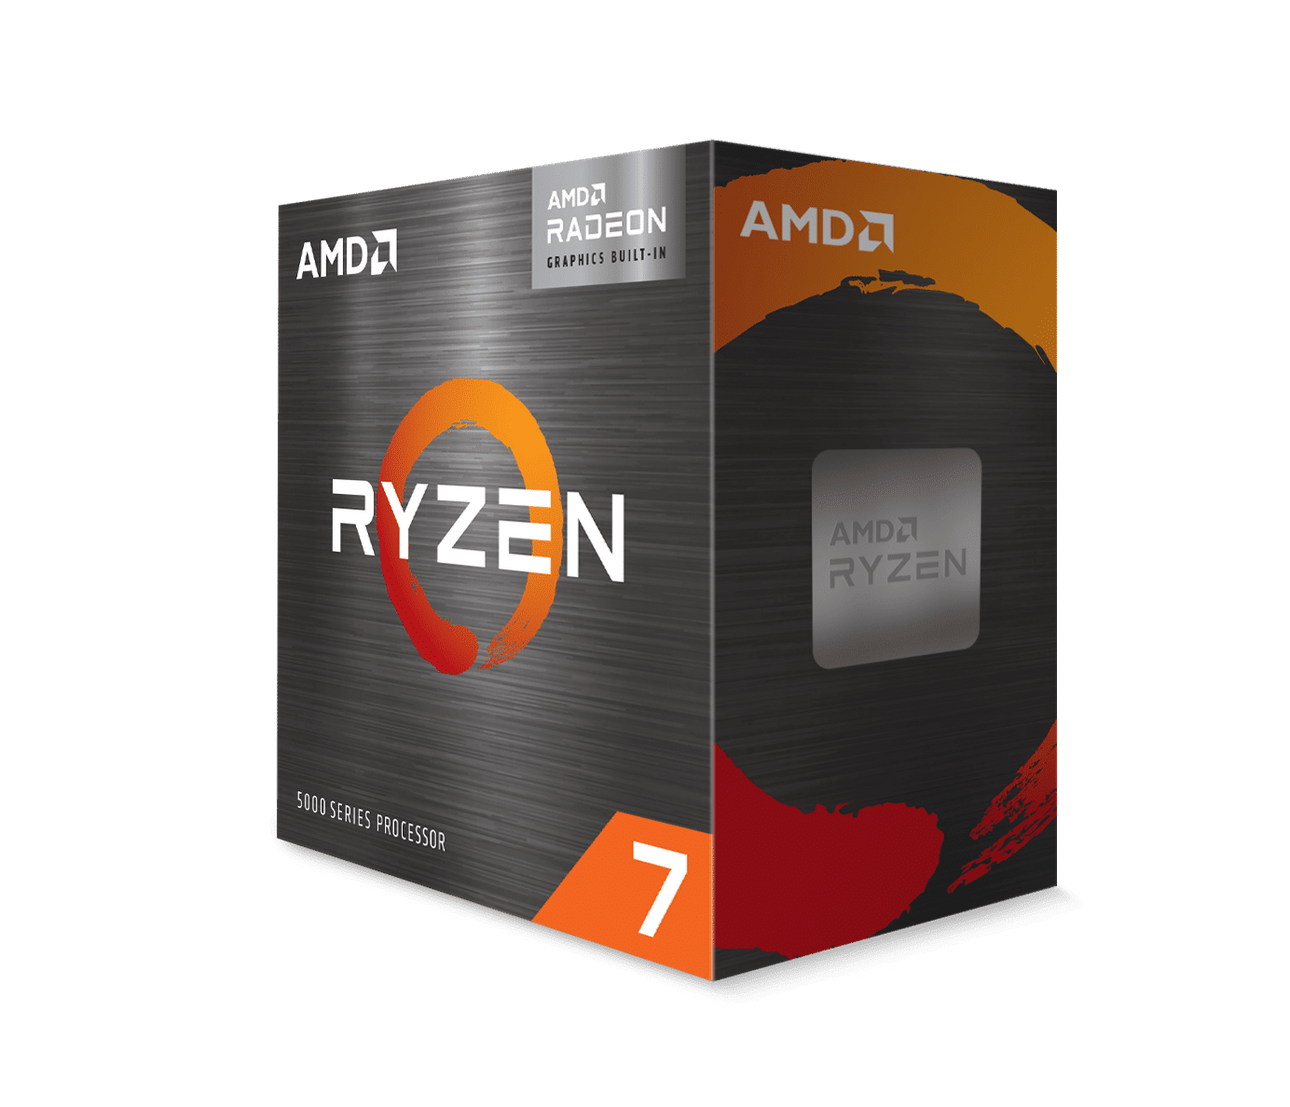 AMD เปิดตัวผลิตภัณฑ์โปรเซสเซอร์ AMD Ryzen 5000 G-Series มาพร้อมกราฟิกการ์ด Radeon Graphics สำหรับผู้ใช้กลุ่ม DIY 3